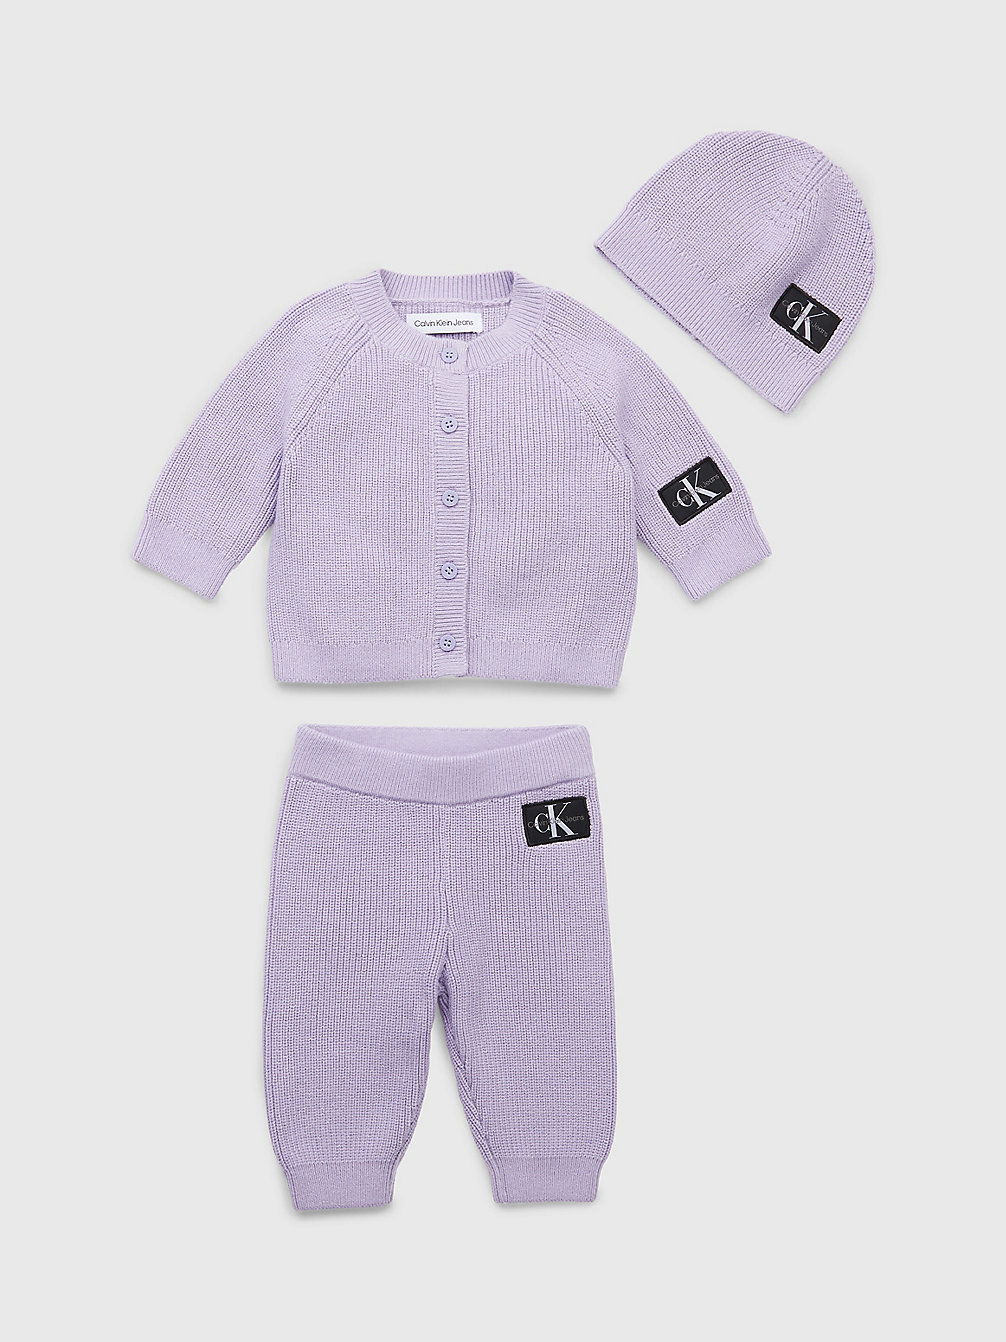 SMOKY LILAC > Baby-Geschenkset Mit Trainingsanzug Und Mütze > undefined newborn - Calvin Klein